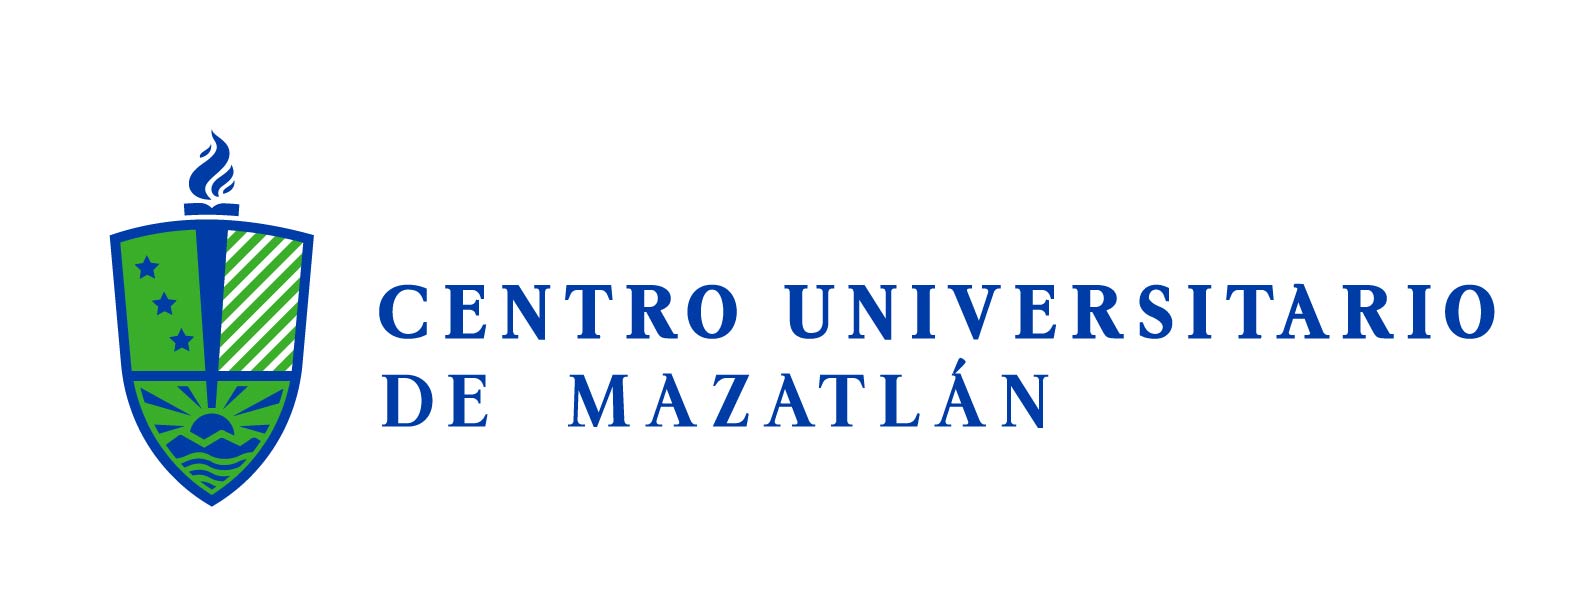 Centro Universitario de Mazatlán